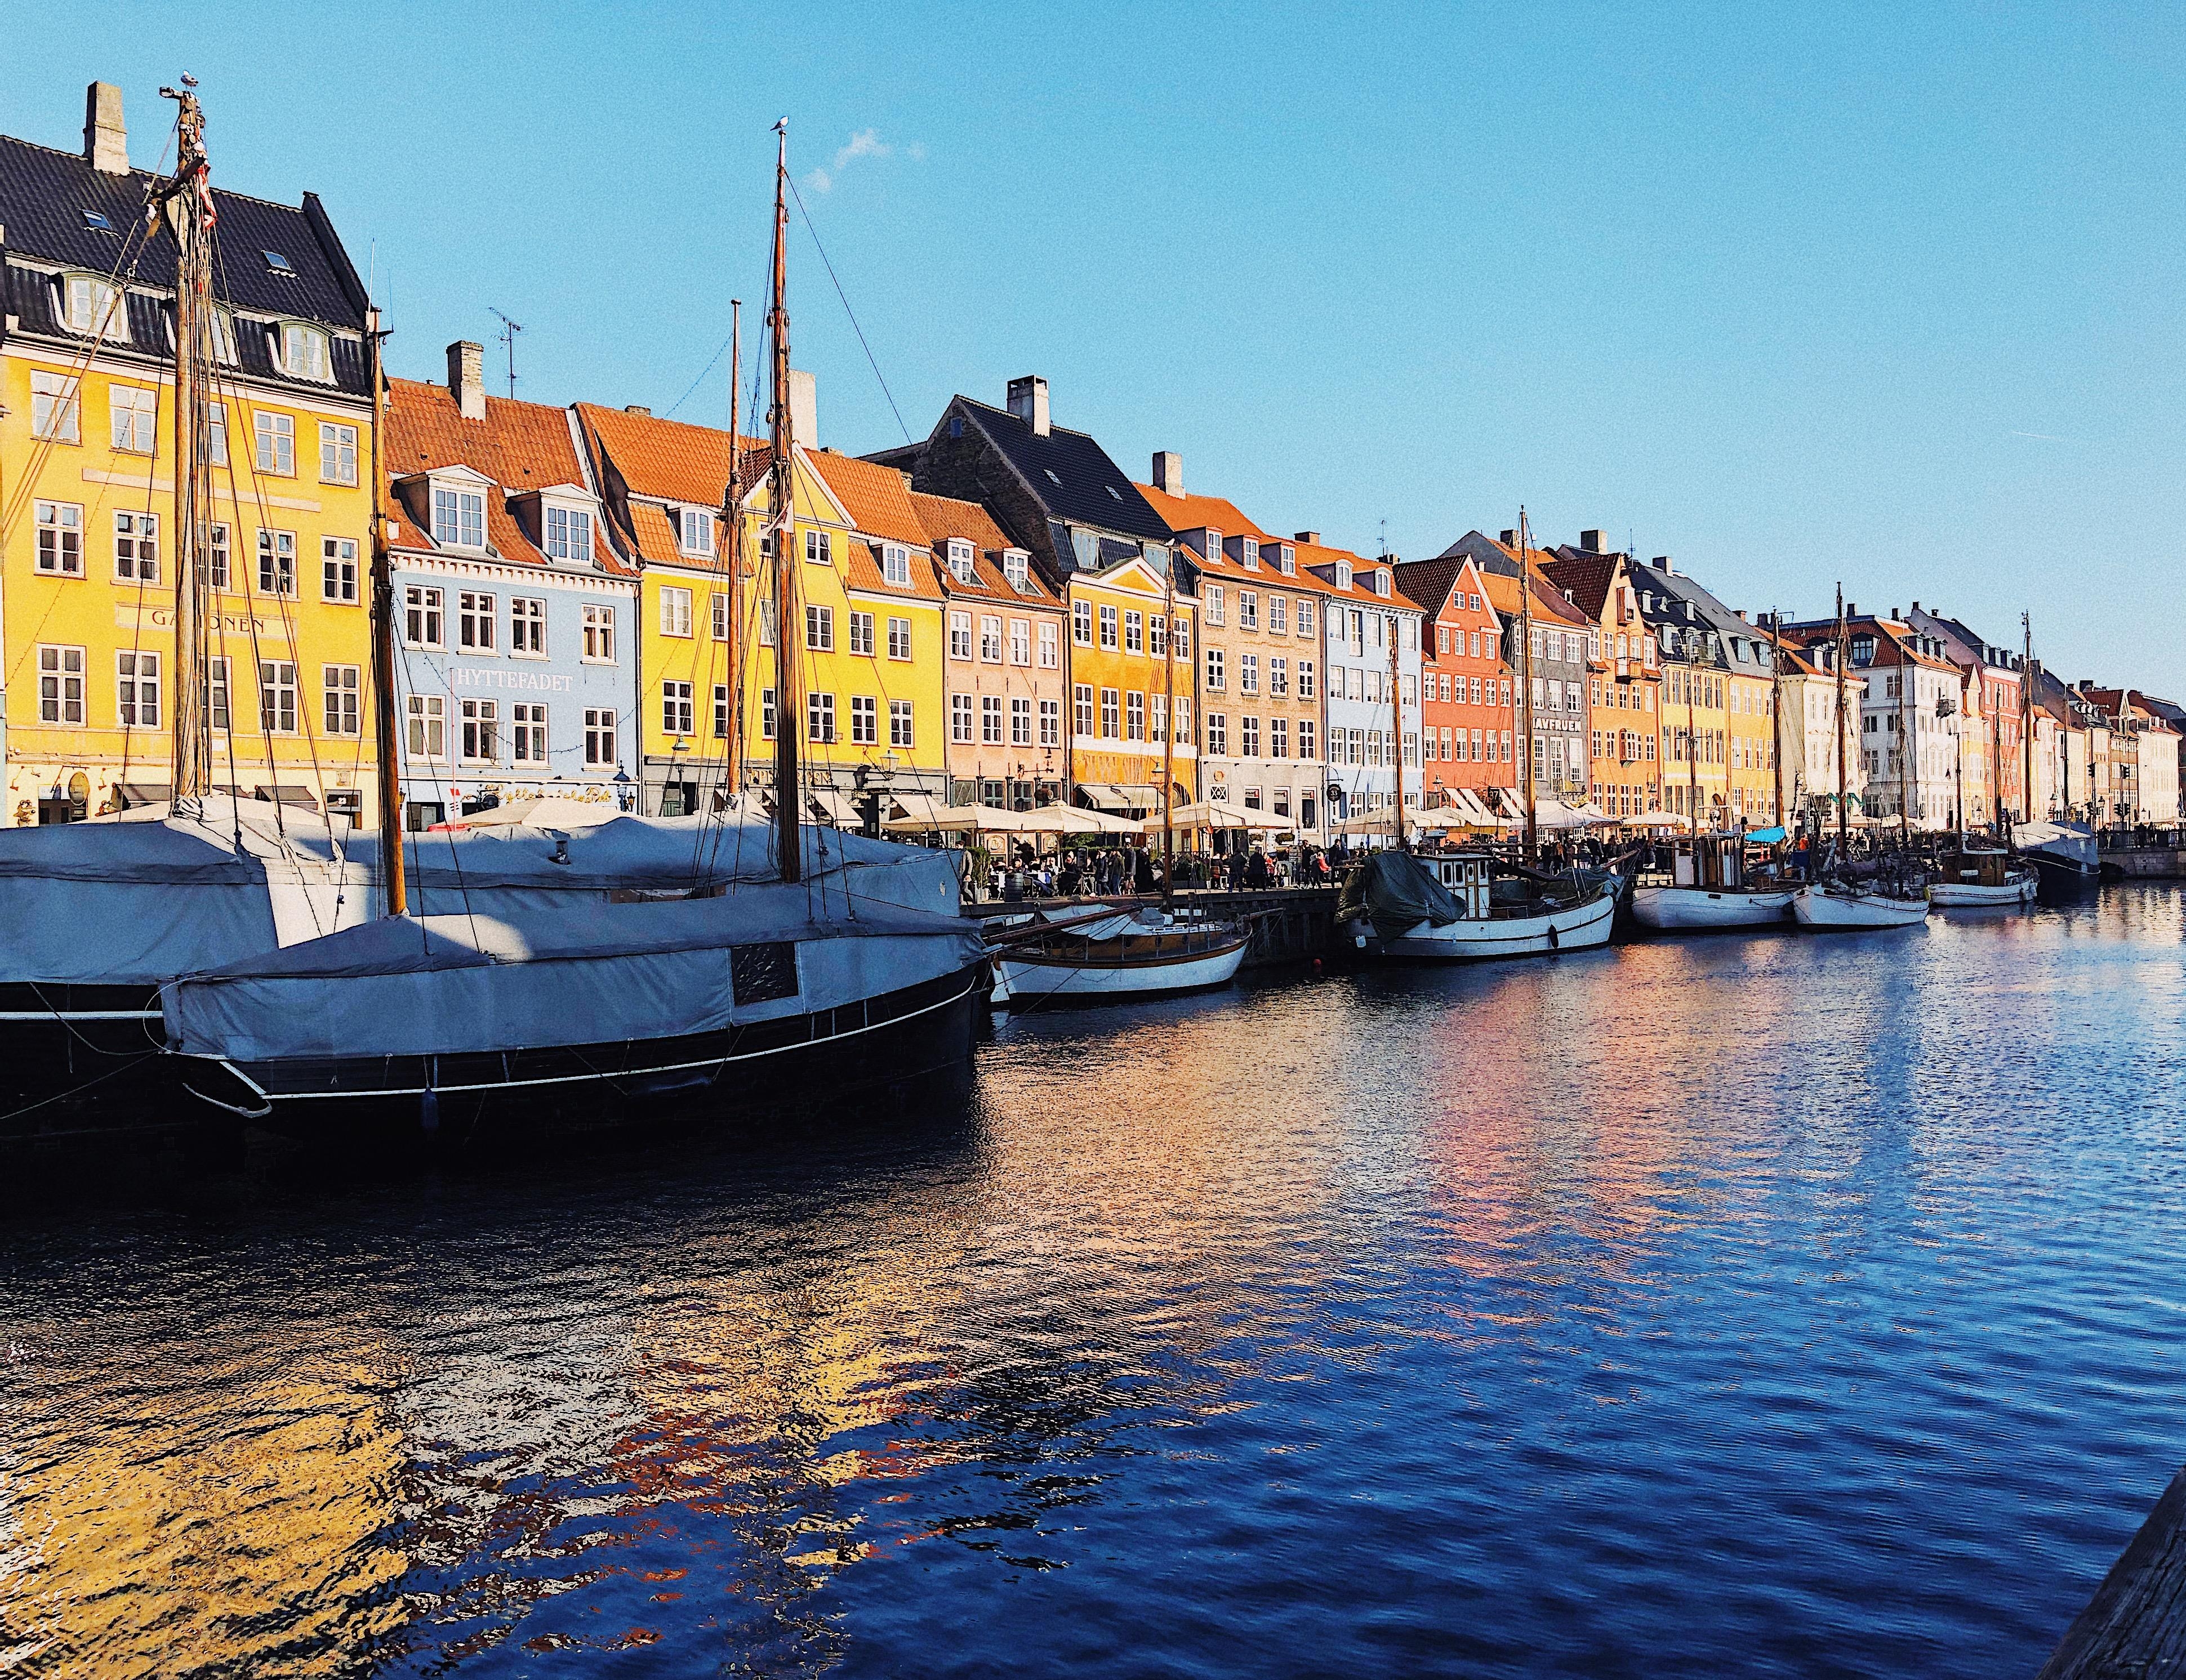 Mein letzter Städtetrip ging im Februar ins fantastisch schöne Kopenhagen 💙
#travelchallenge #städtetrip